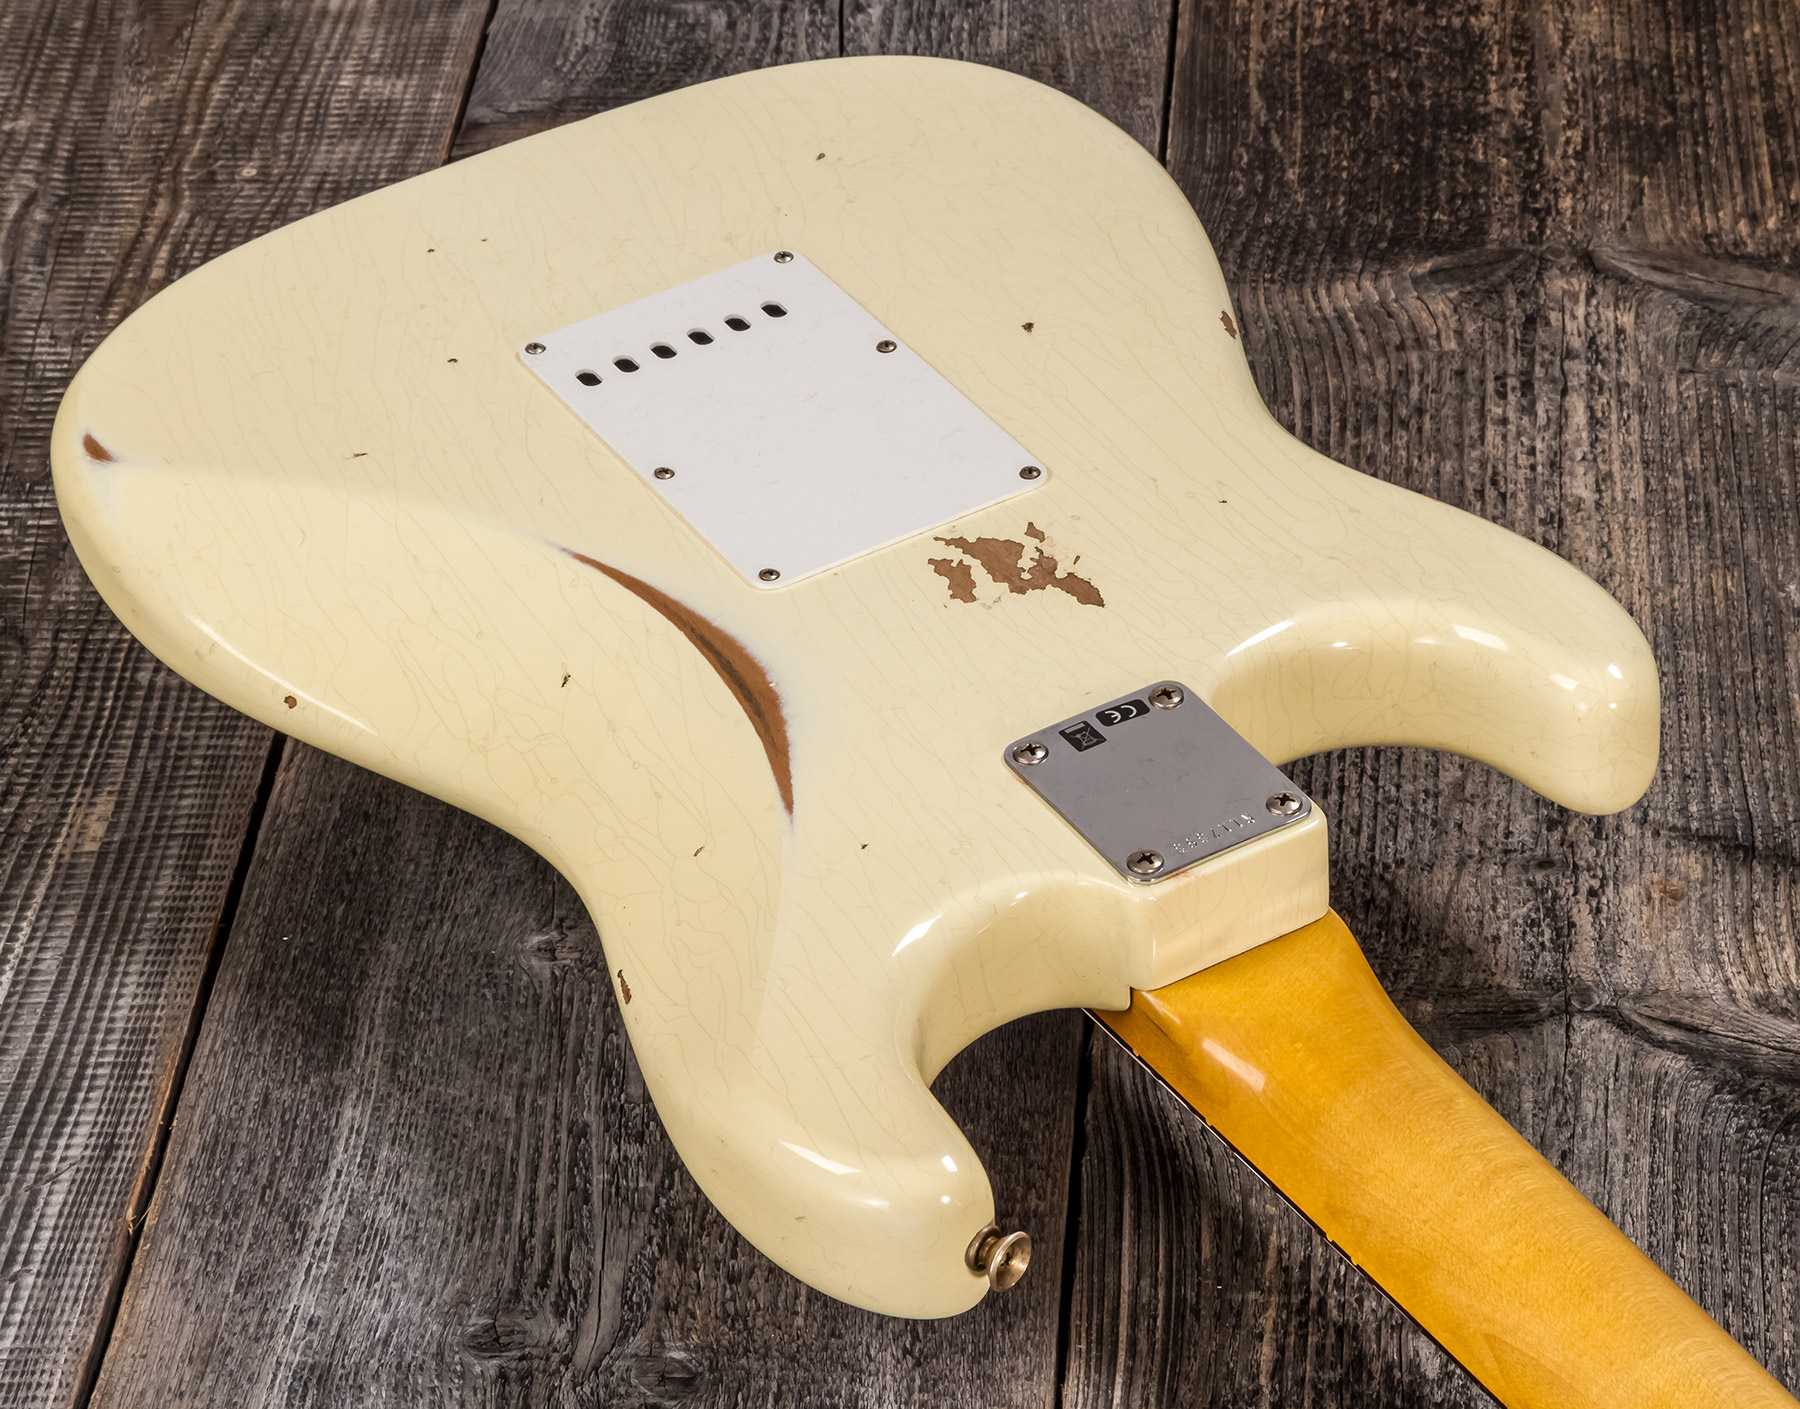 Fender Custom Shop Strat 1959 3s Trem Rw #r117393 - Relic Aged Vintage White - Str shape electric guitar - Variation 4